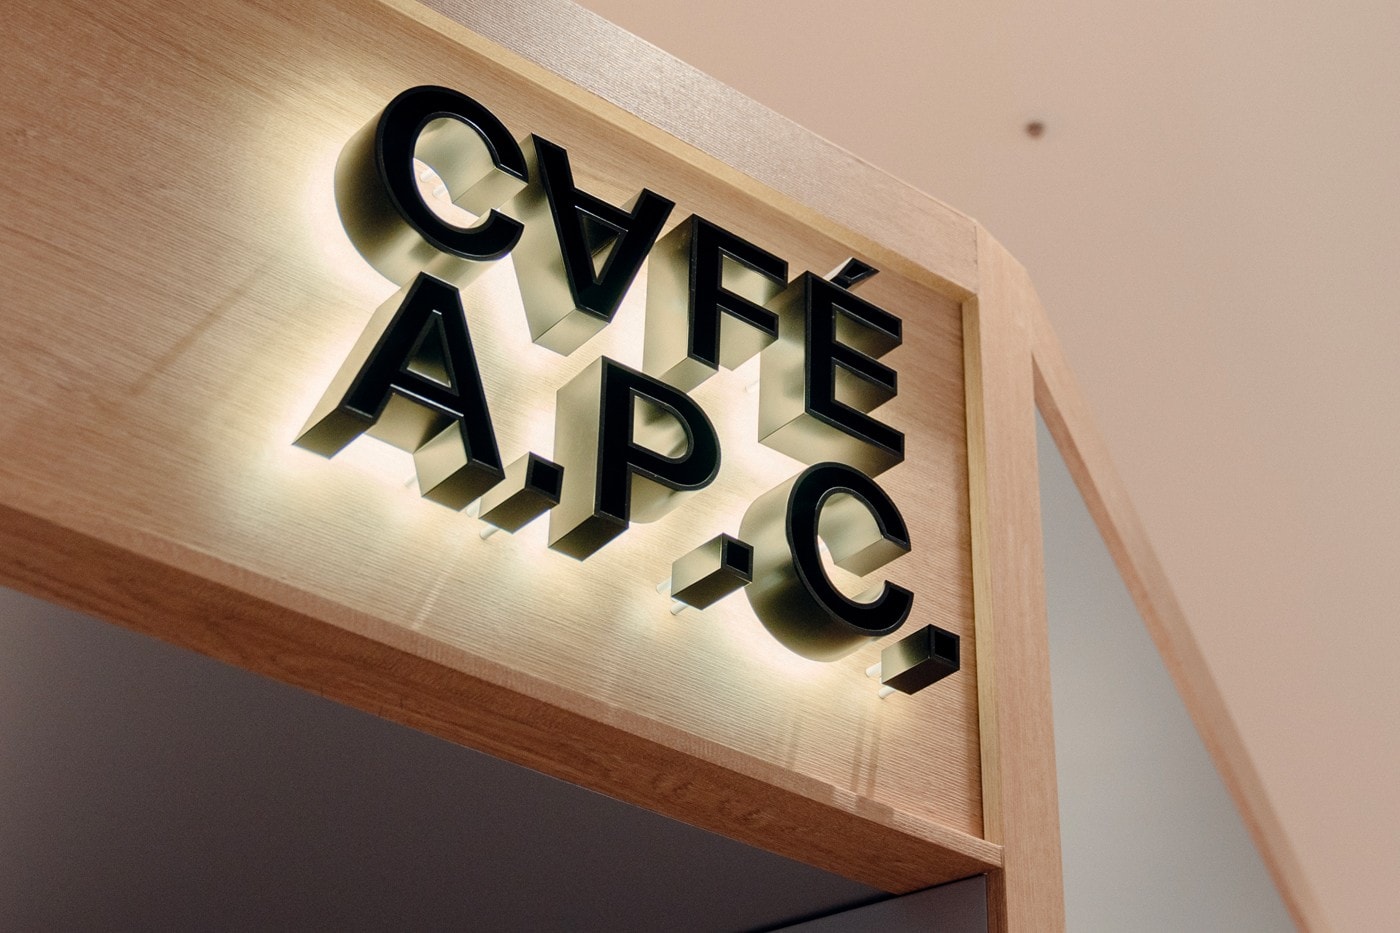 A.P.C. 首家「CAFÉ A.P.C.」咖啡廳正式進駐韓國首爾